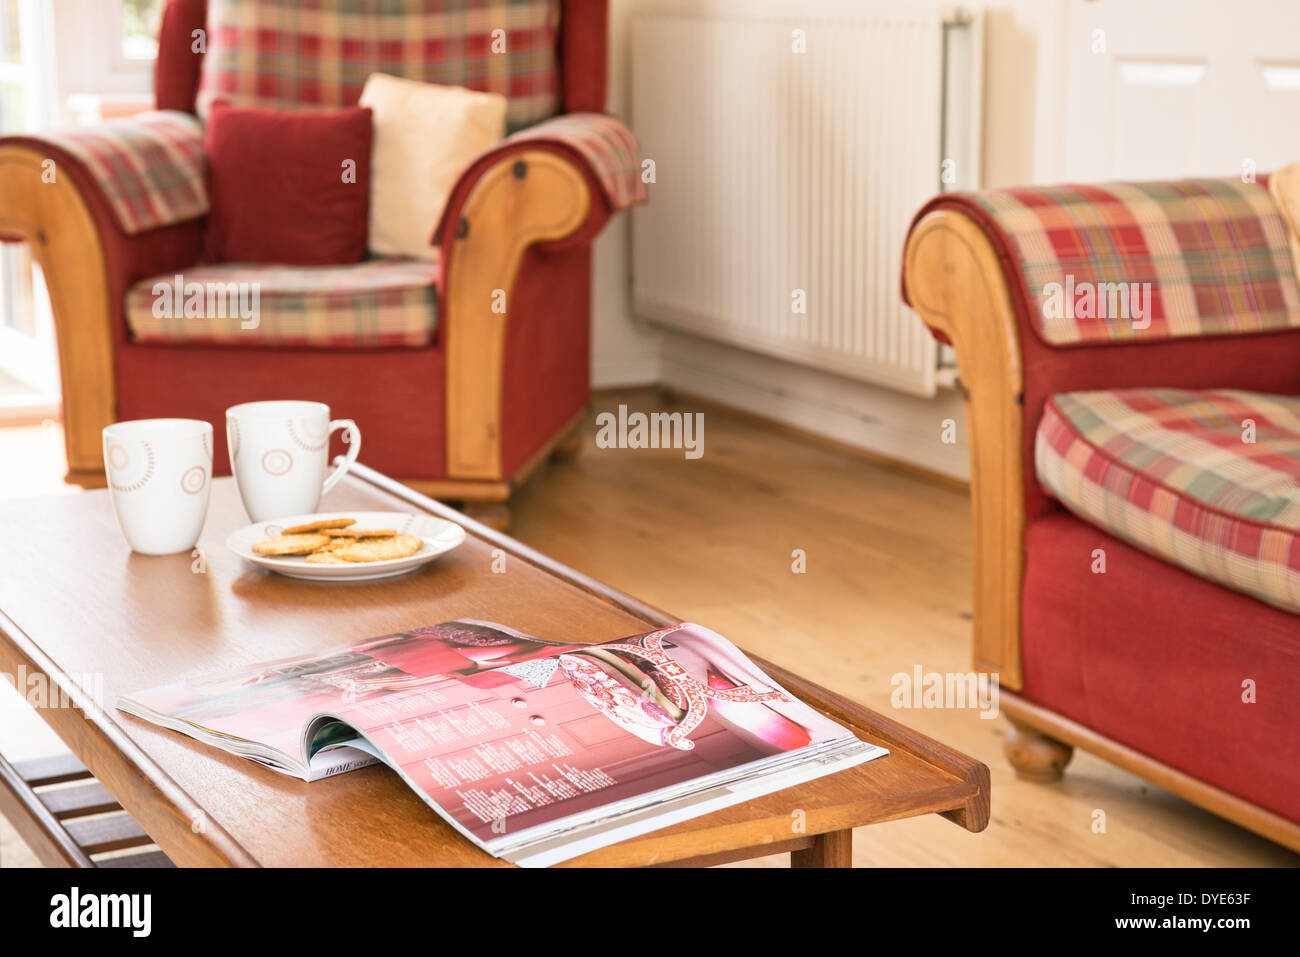 Tazze, biscotti e una rivista su un tavolino in soggiorno Foto Stock